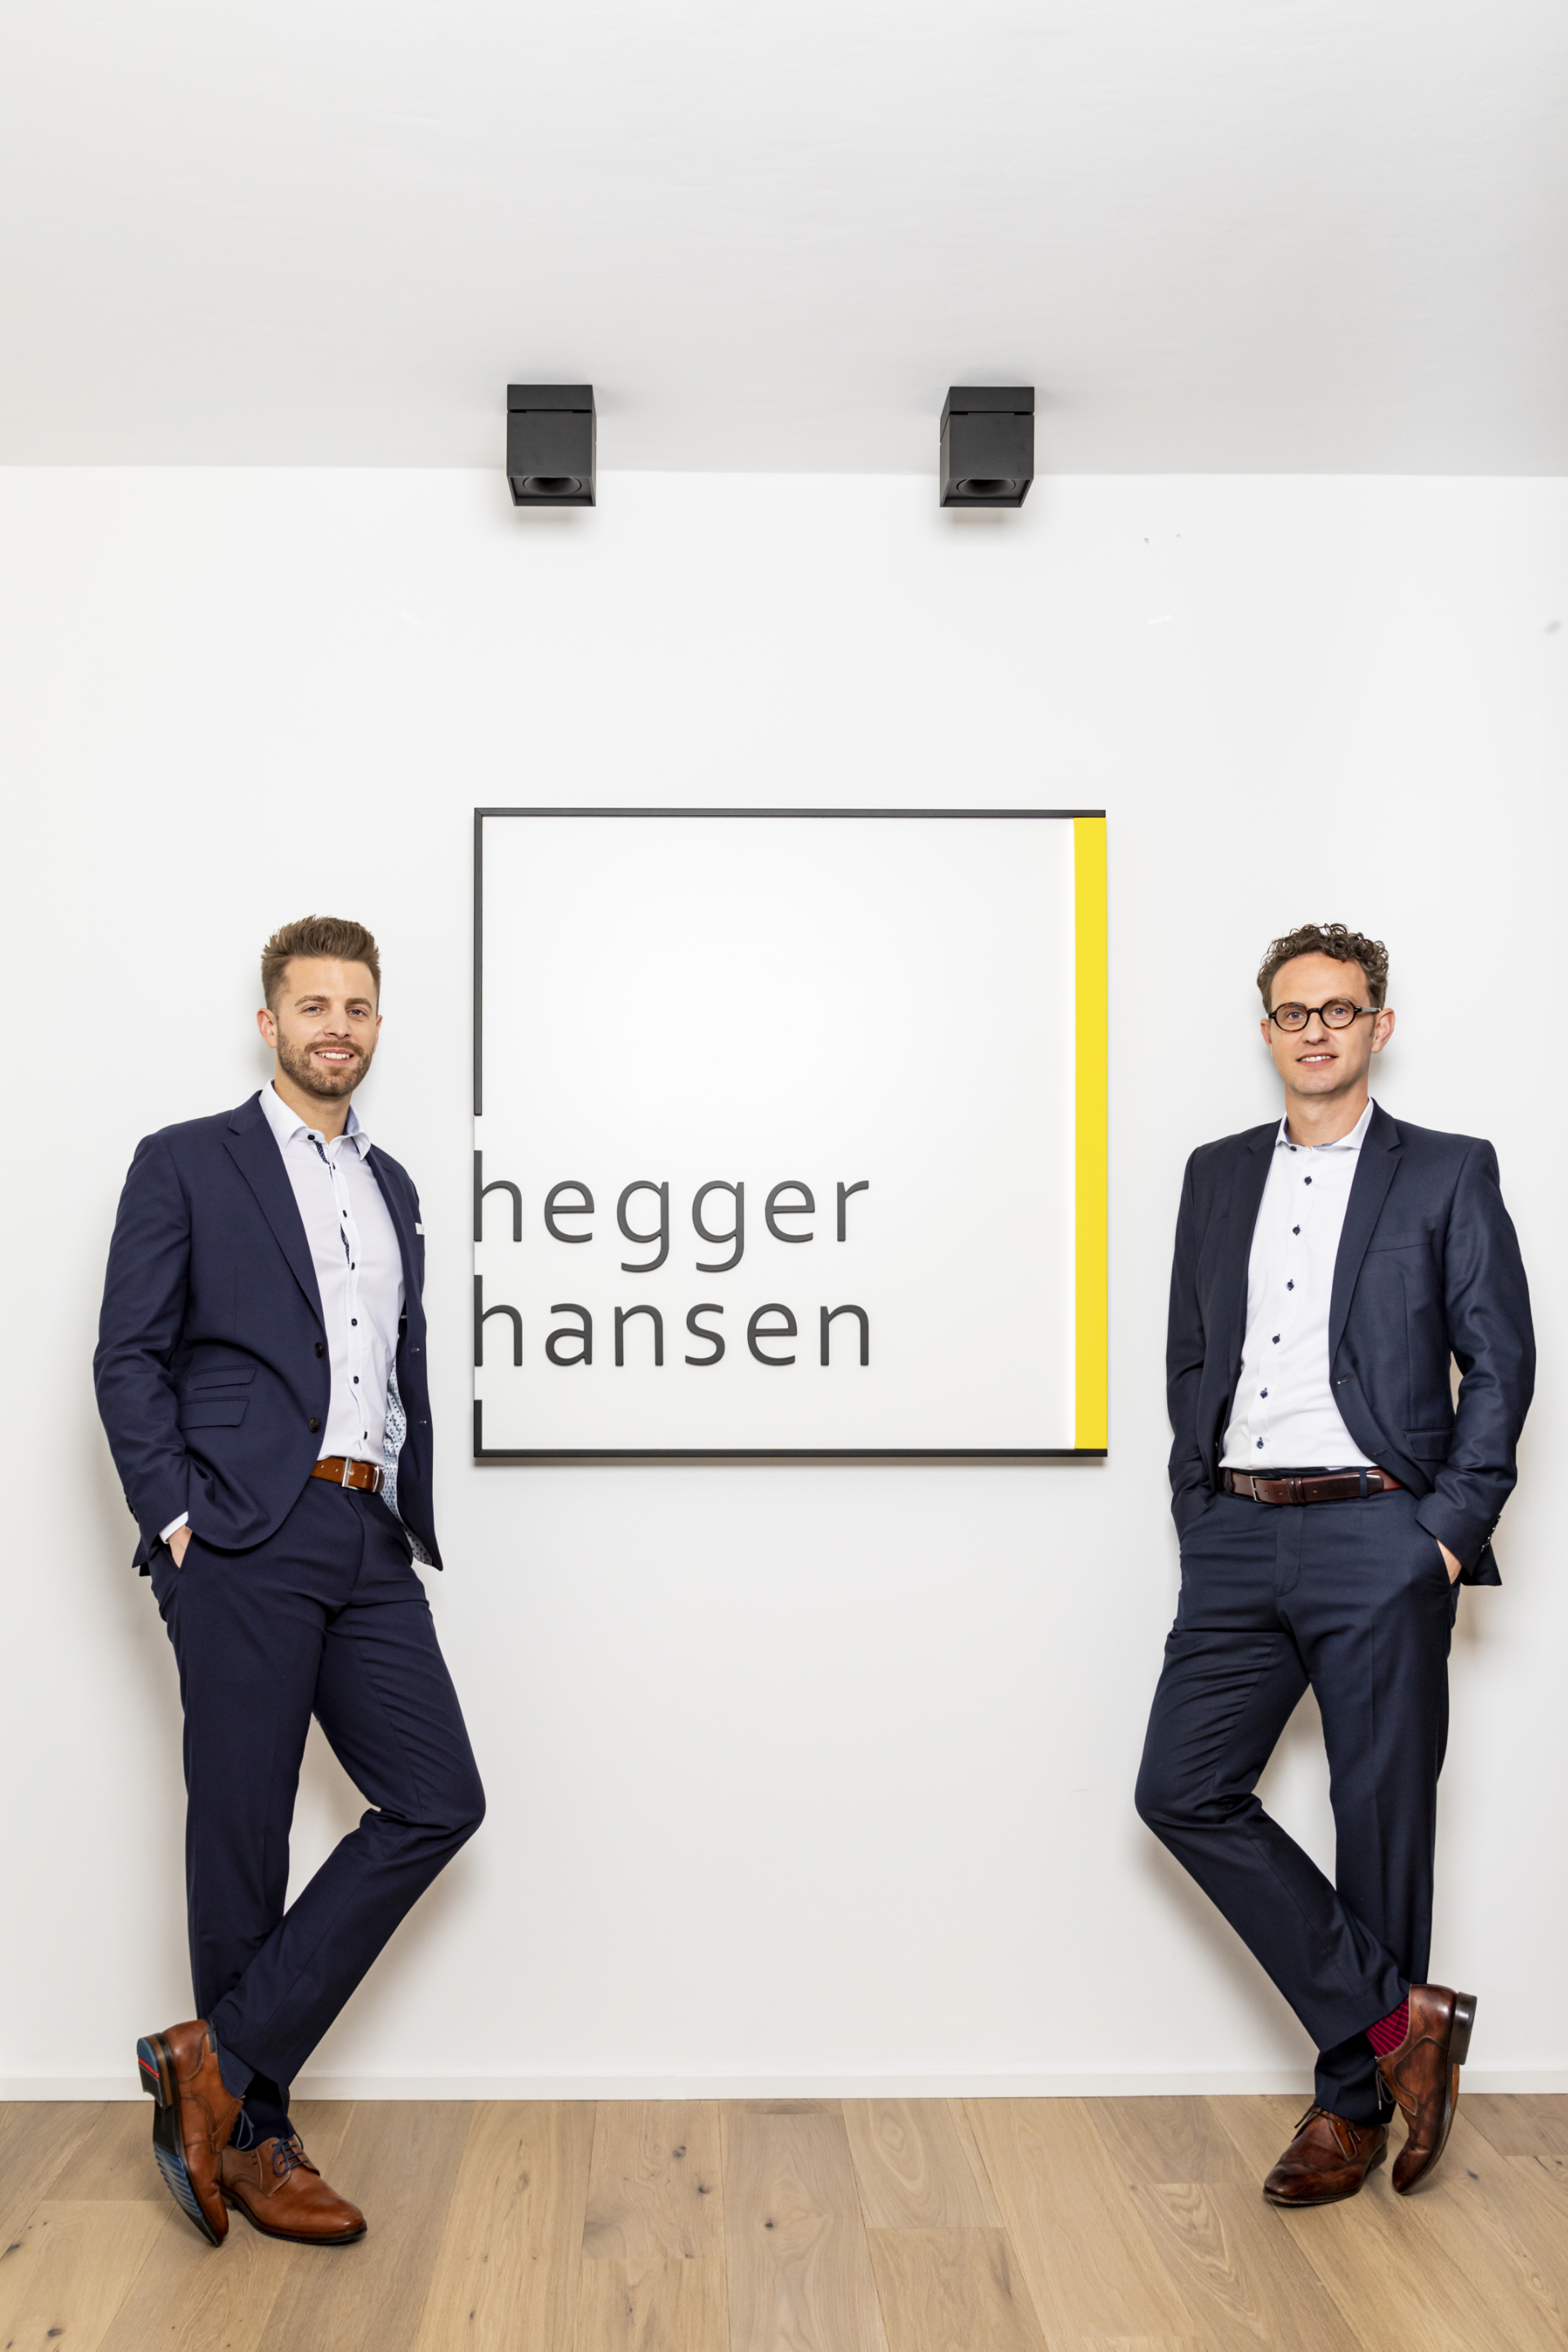  Hegger Hansen Steuerberatung Erkelenz: Betriebsprüfung, Einkommensteuer